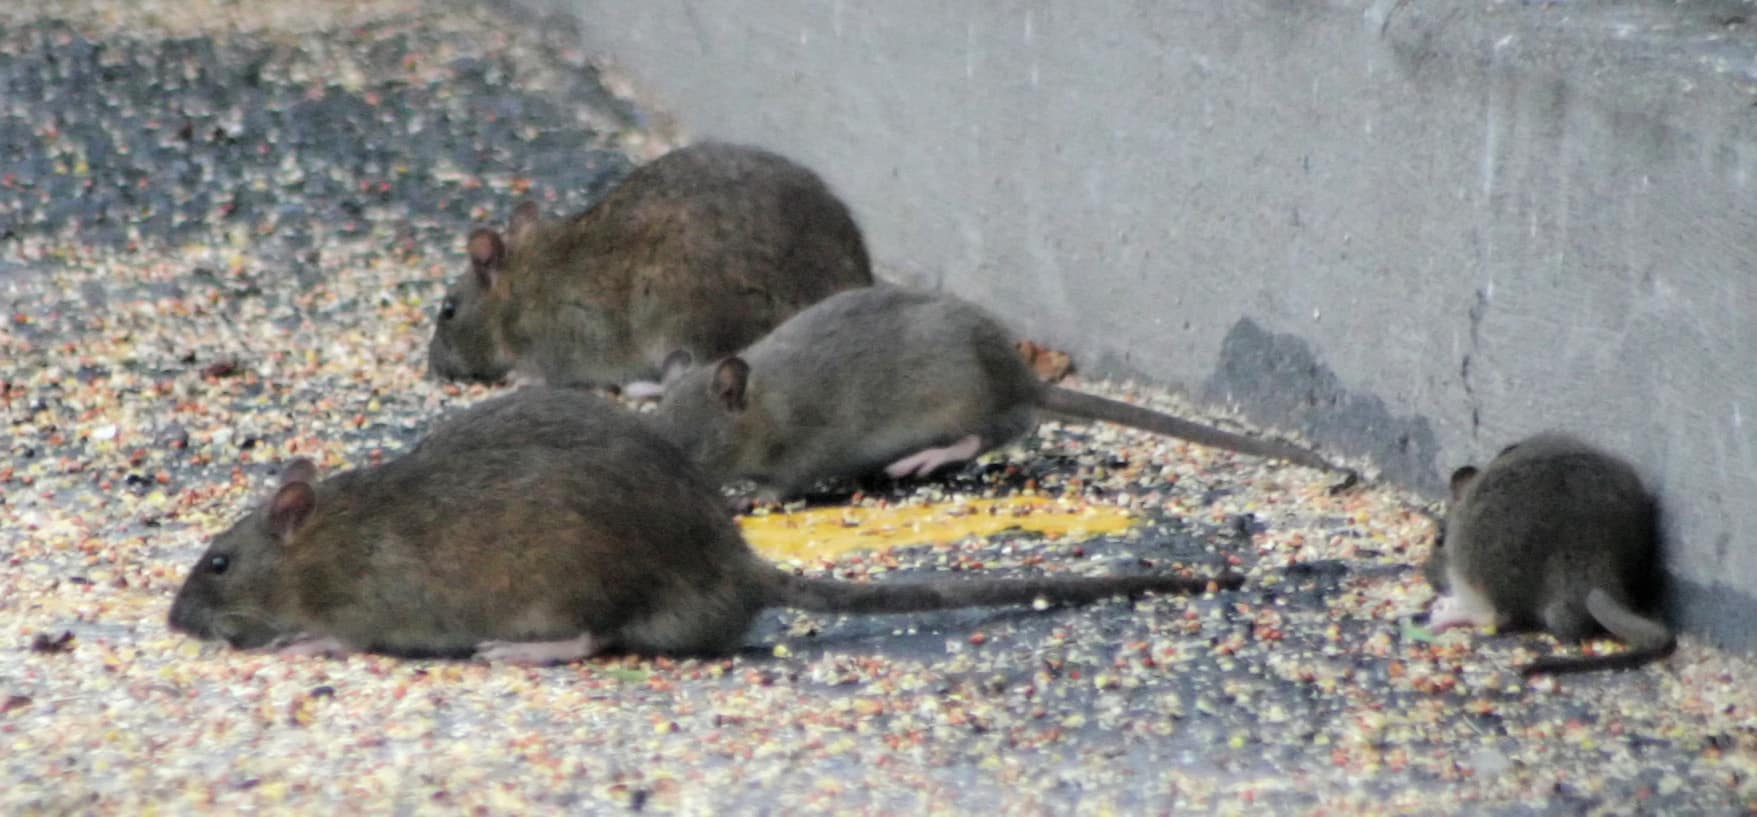 Rats en ville qui se nourrissent de céréales. Il faut limiter la prolifération des rats en ville.